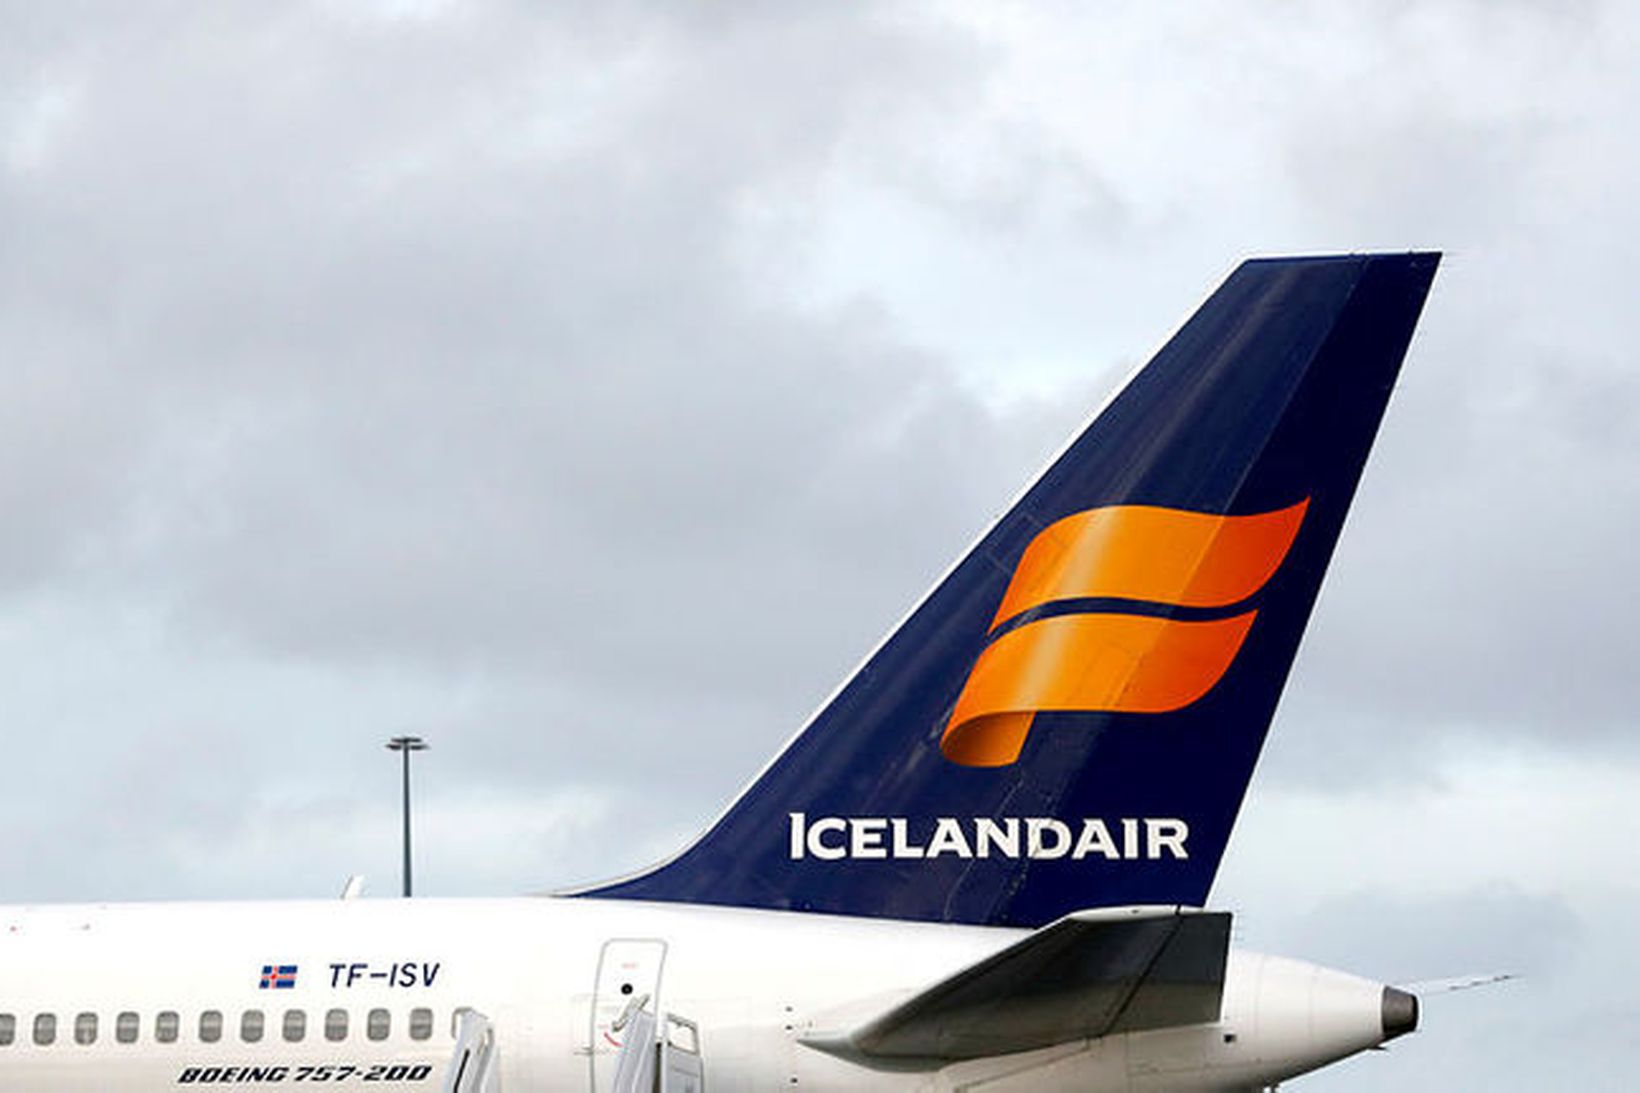 Þrjár farþegaþotur Icelandair flugu lágflug yfir borginni í dag til …